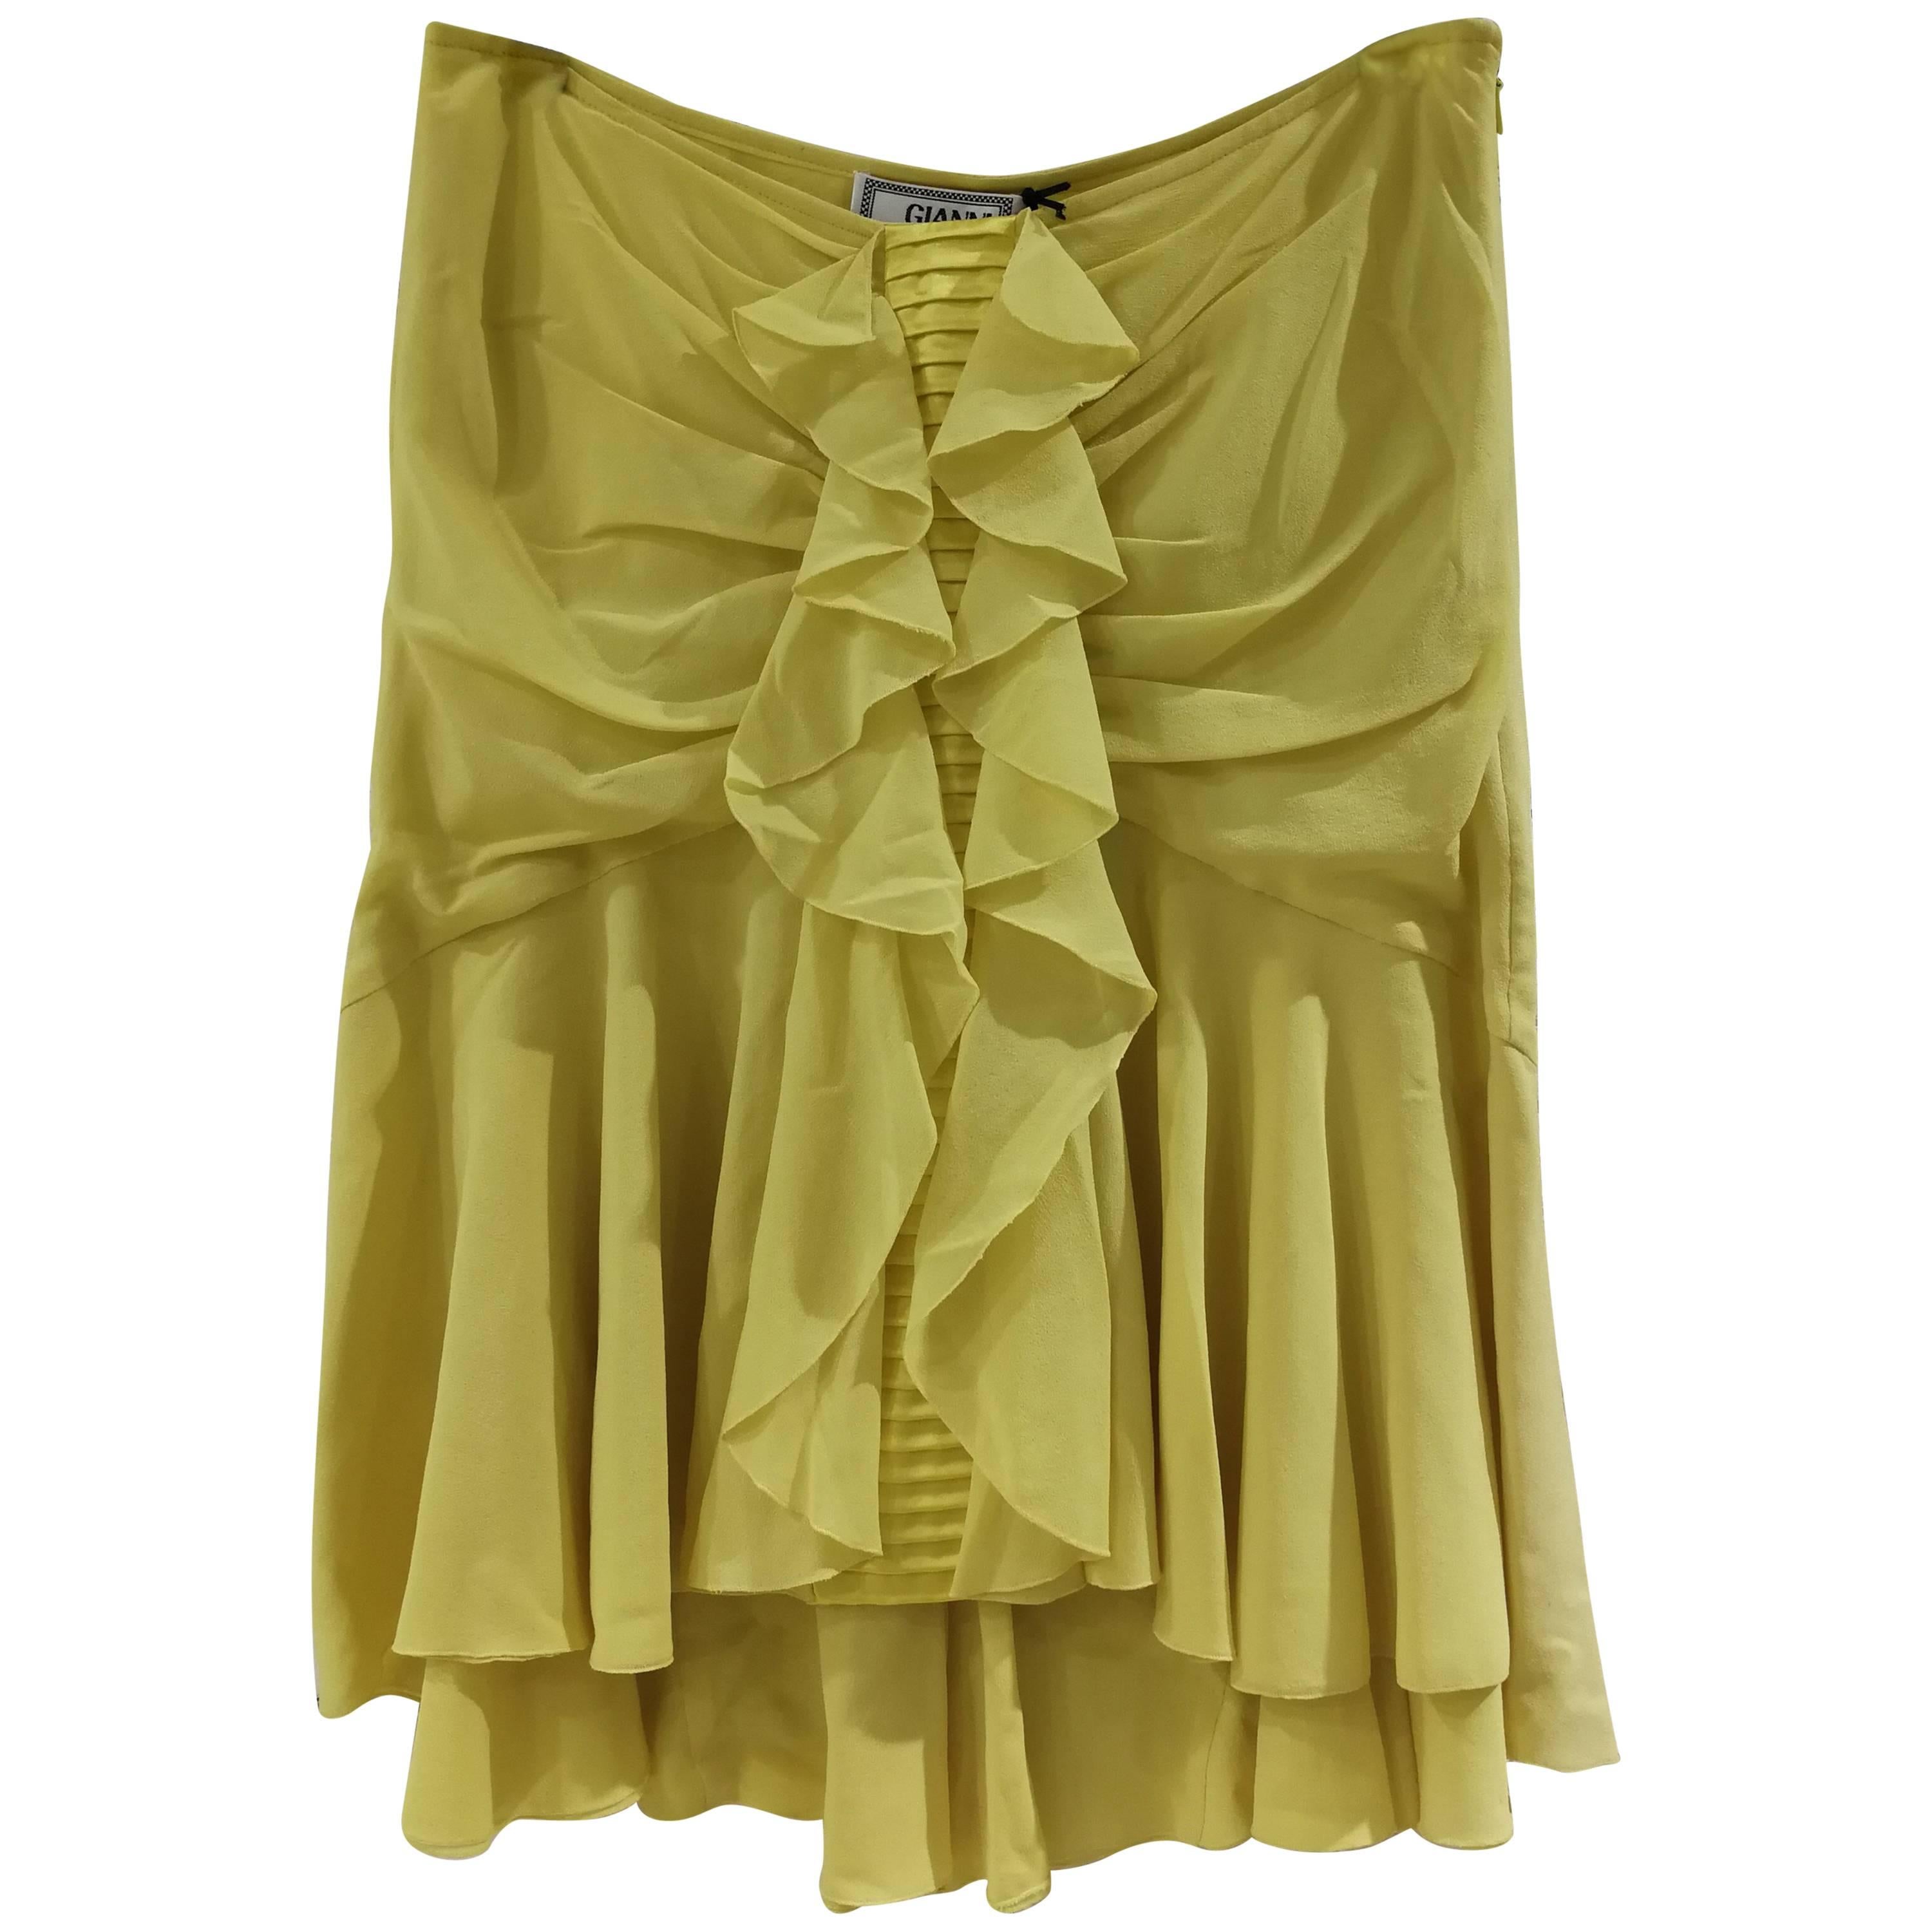 Gianni Versace Yellow Silk Skirt NWOT